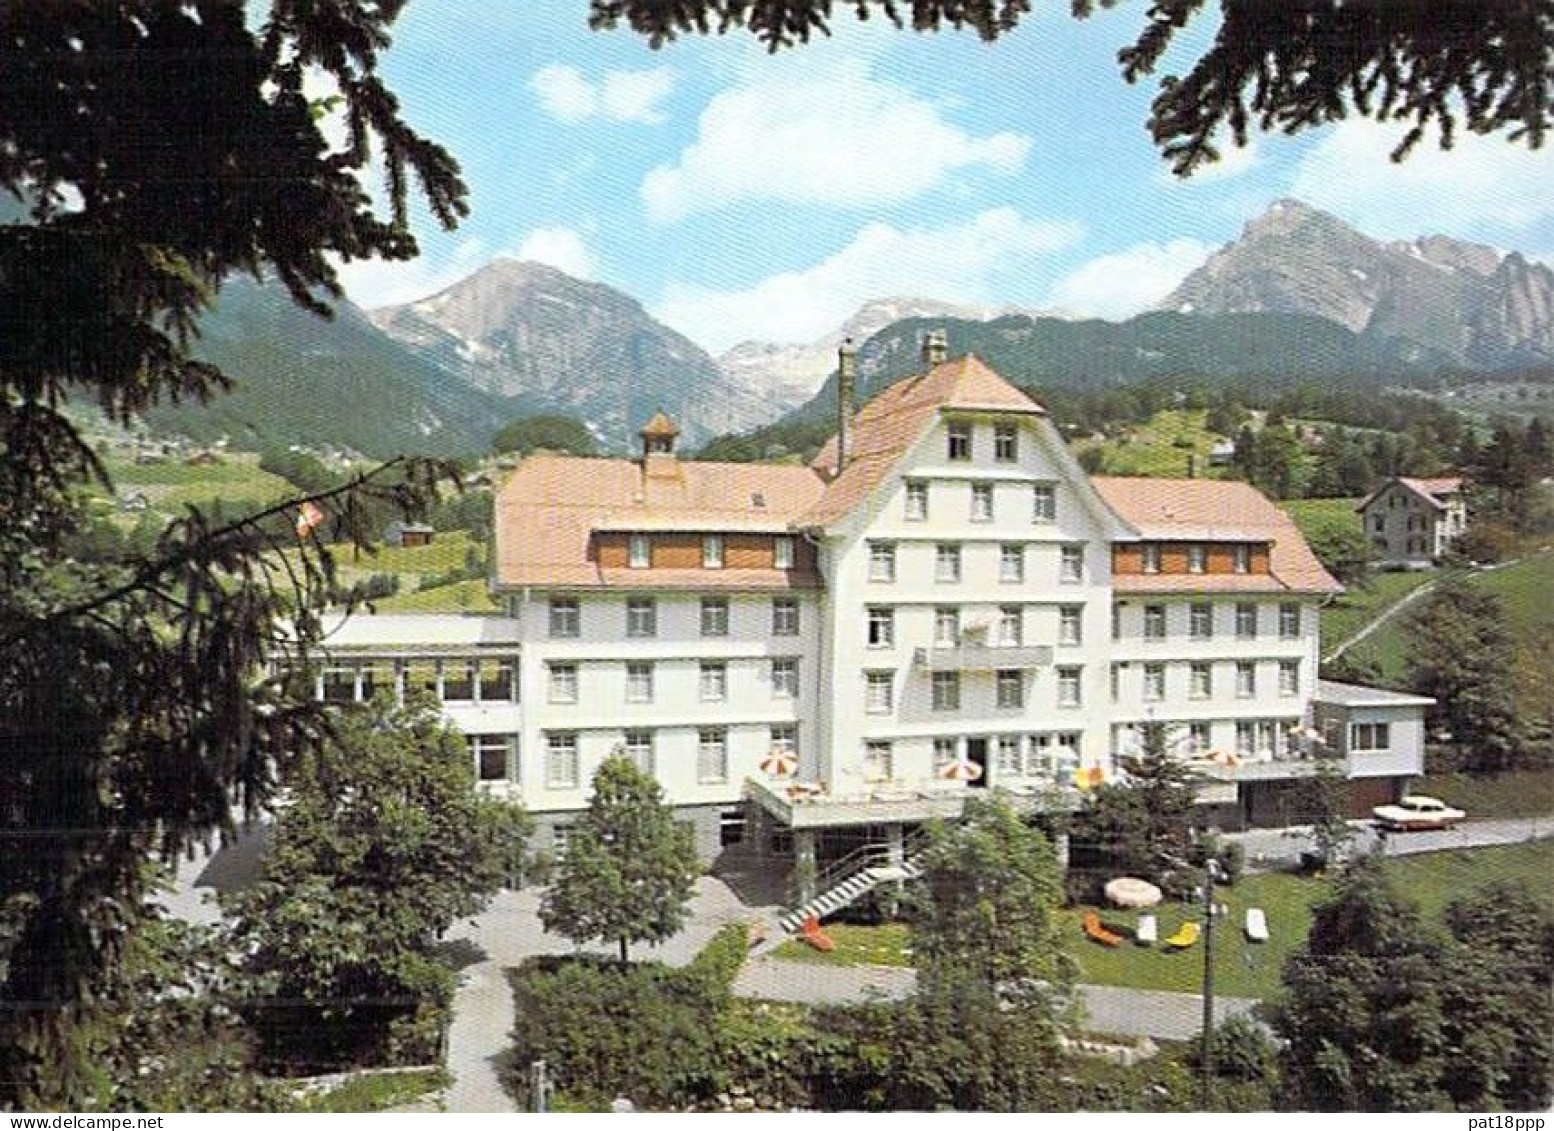 SUISSE - Lot de 35 CPSM GF HOTEL RESTAURANT : Tous Cantons sauf BE VS VD GR (0.14 €/carte) Swiss Switzerland Schweiz